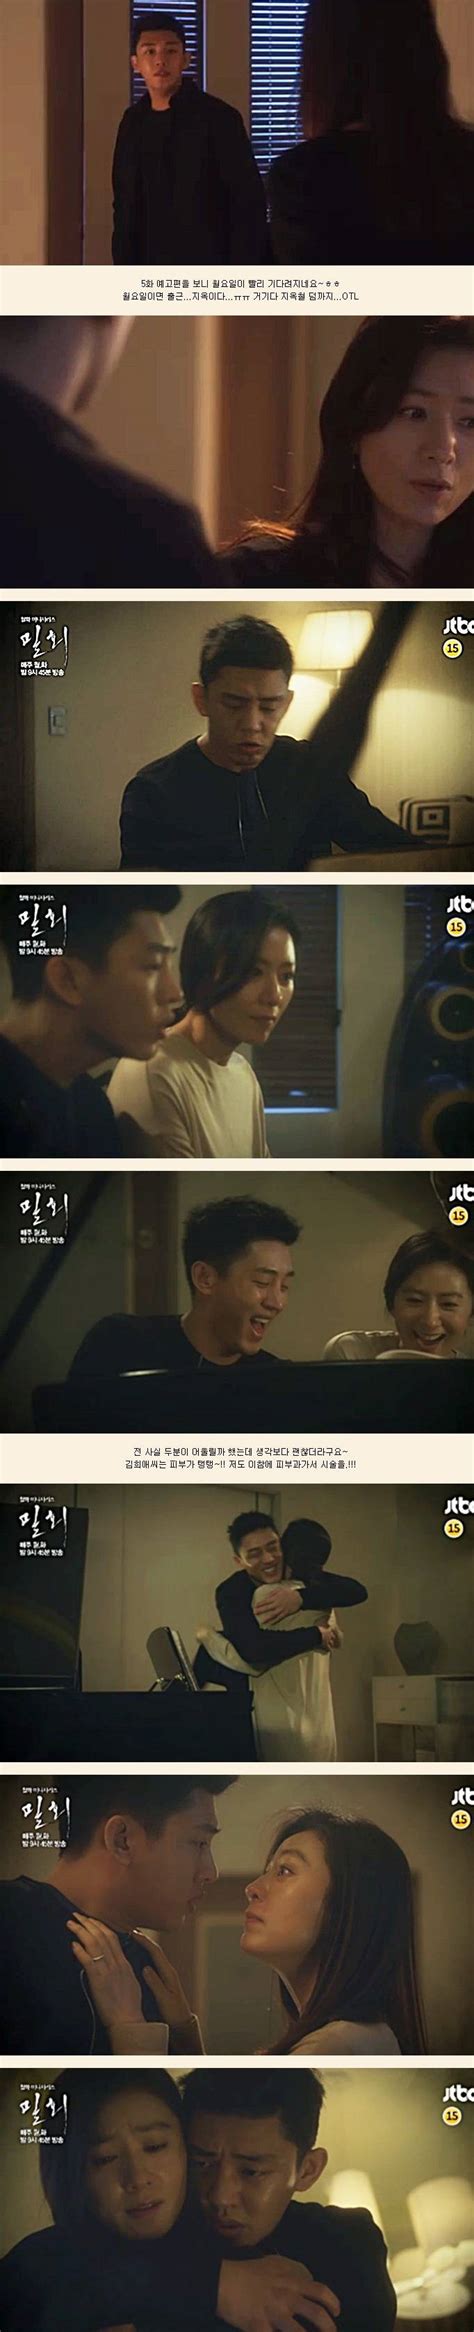 [spoiler] Added Episode 5 Captures For The Korean Drama Secret Love Affair Hancinema